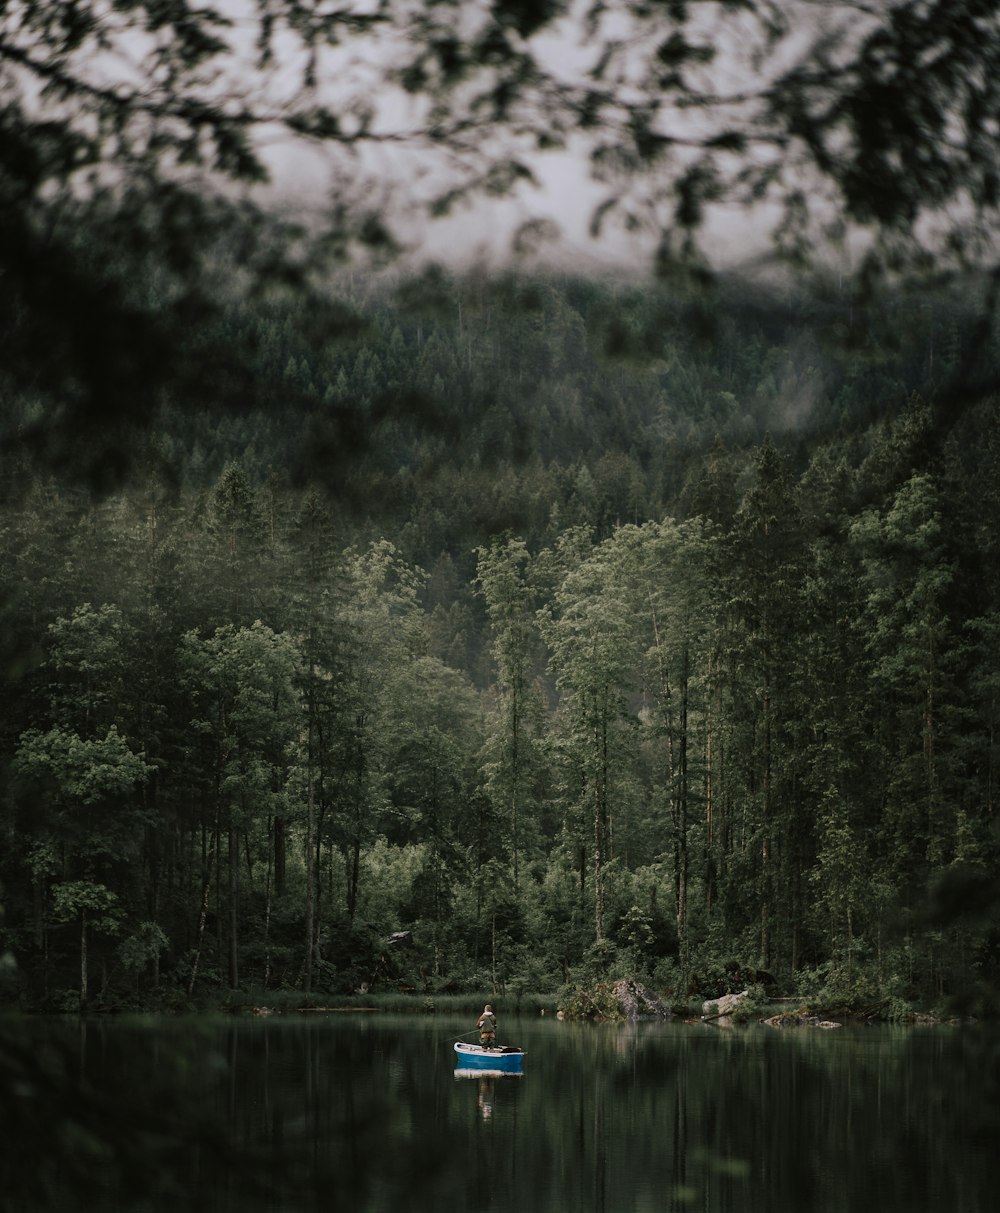 Una barca che galleggia sulla cima di un lago circondata da alberi